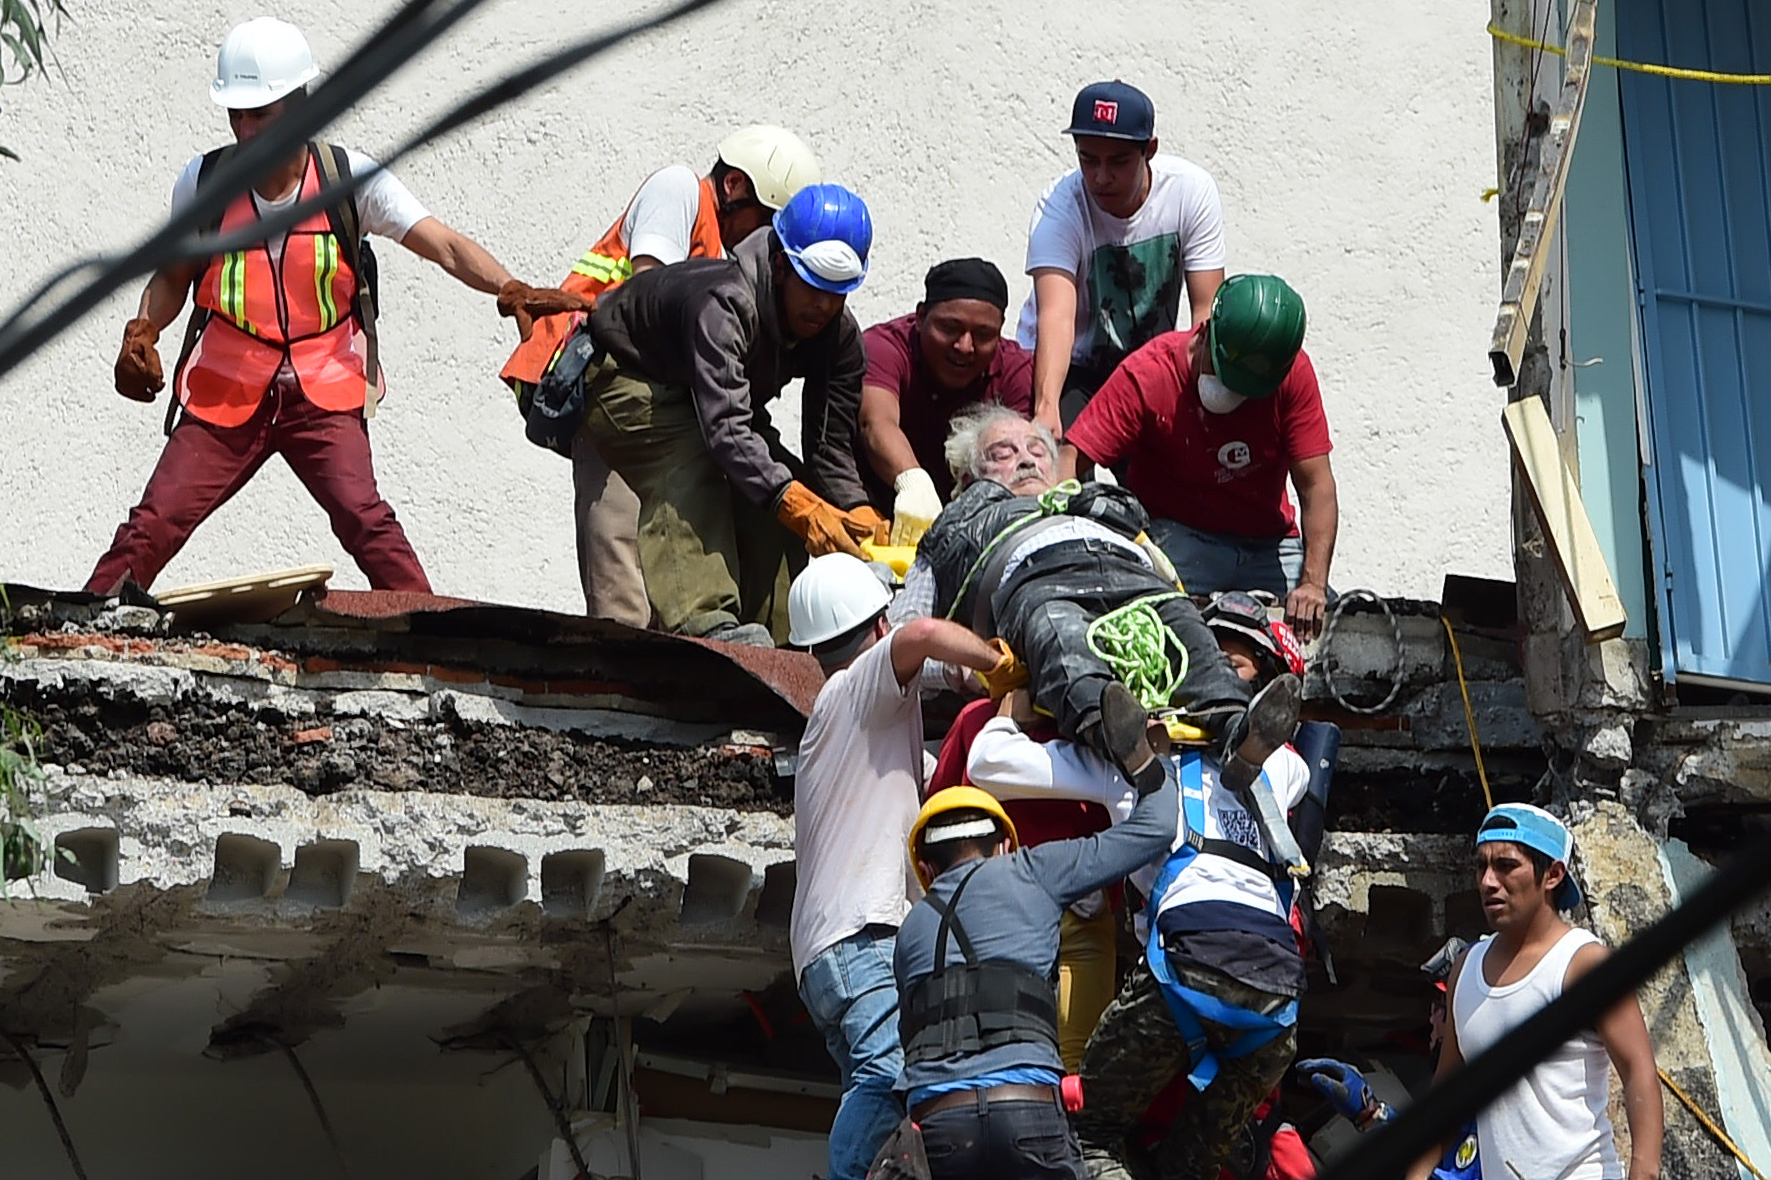 Спасенные землетрясение. Землетрясение в Мексике 2017 год 19 сентября. Спасатели спасают людей из под завалов. Спасательные работы из под завалов.